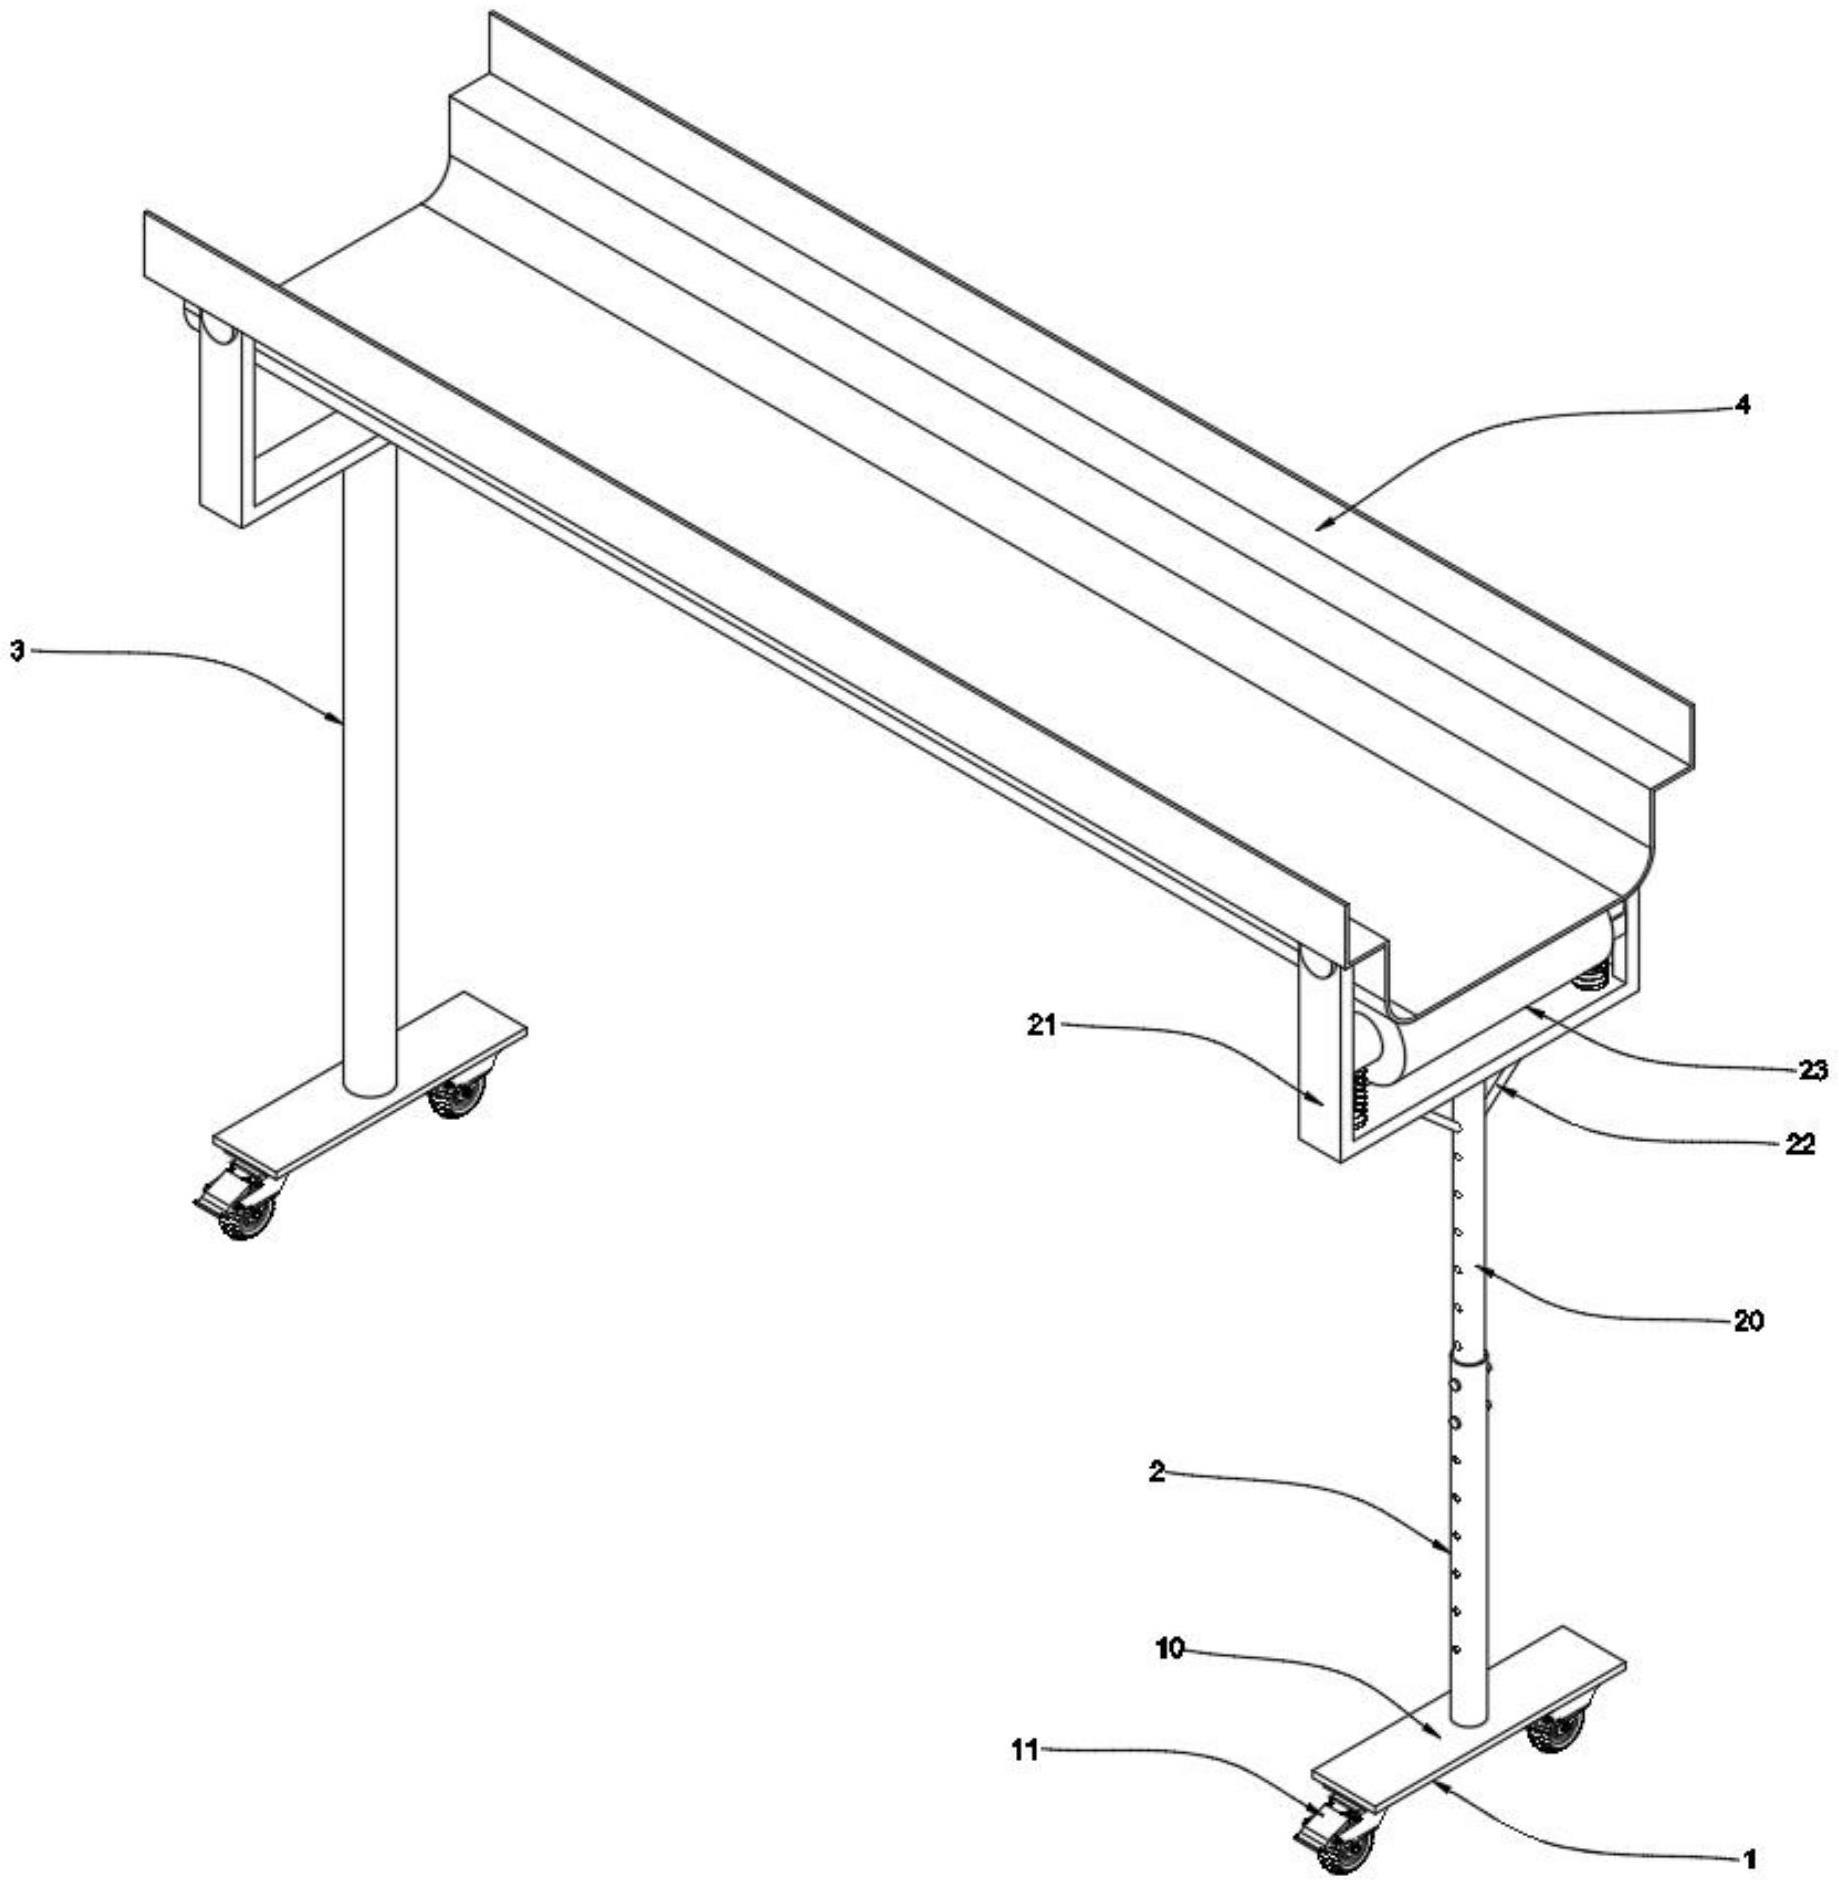 坡度可调式滑梯的旋转支撑组件的制作方法